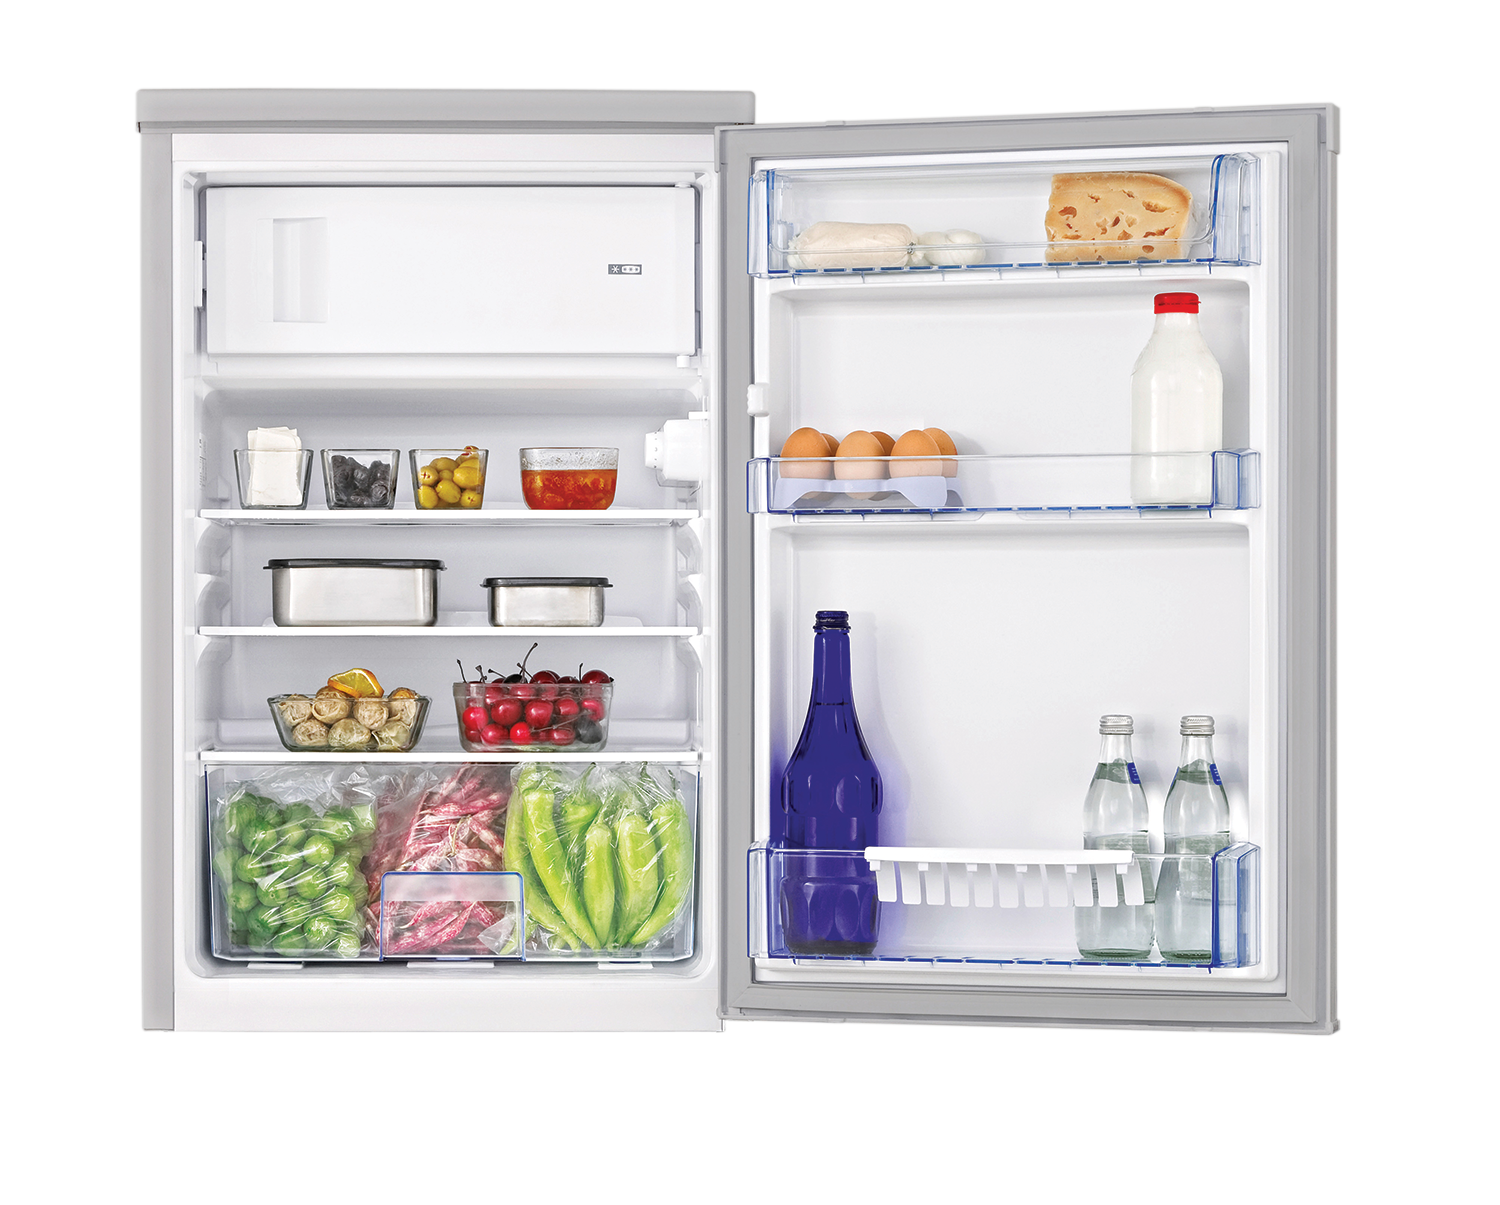 Réfrigérateur table top 114L avec freezer